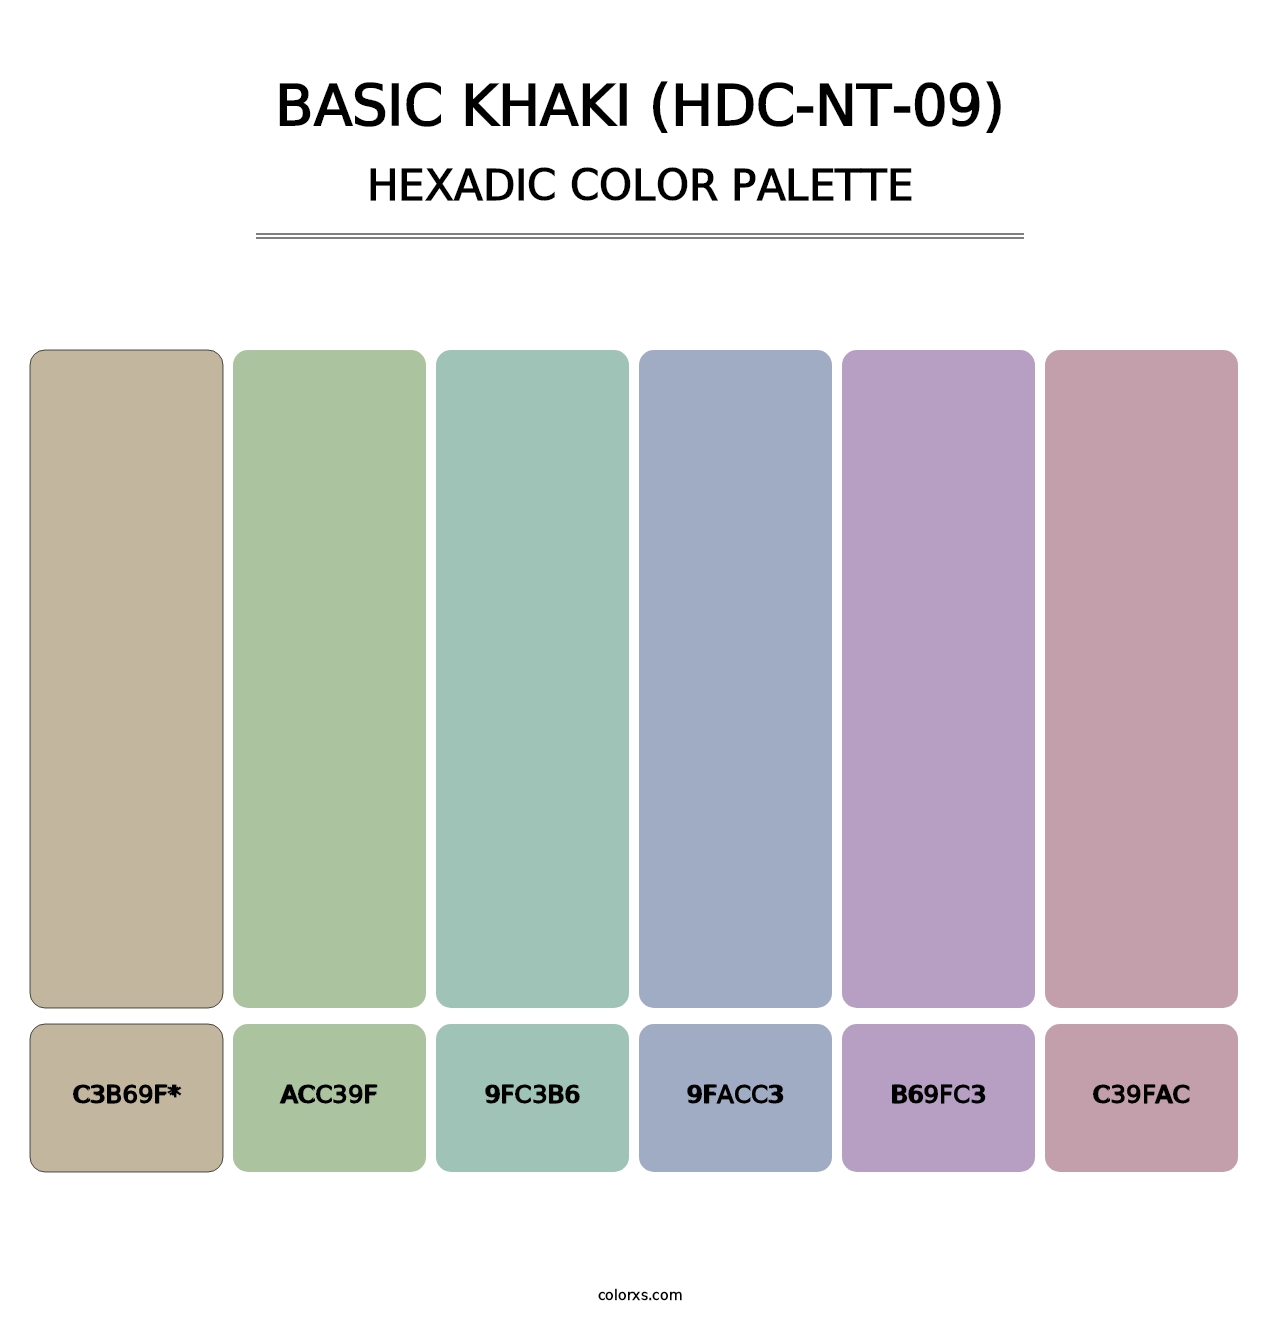 Basic Khaki (HDC-NT-09) - Hexadic Color Palette